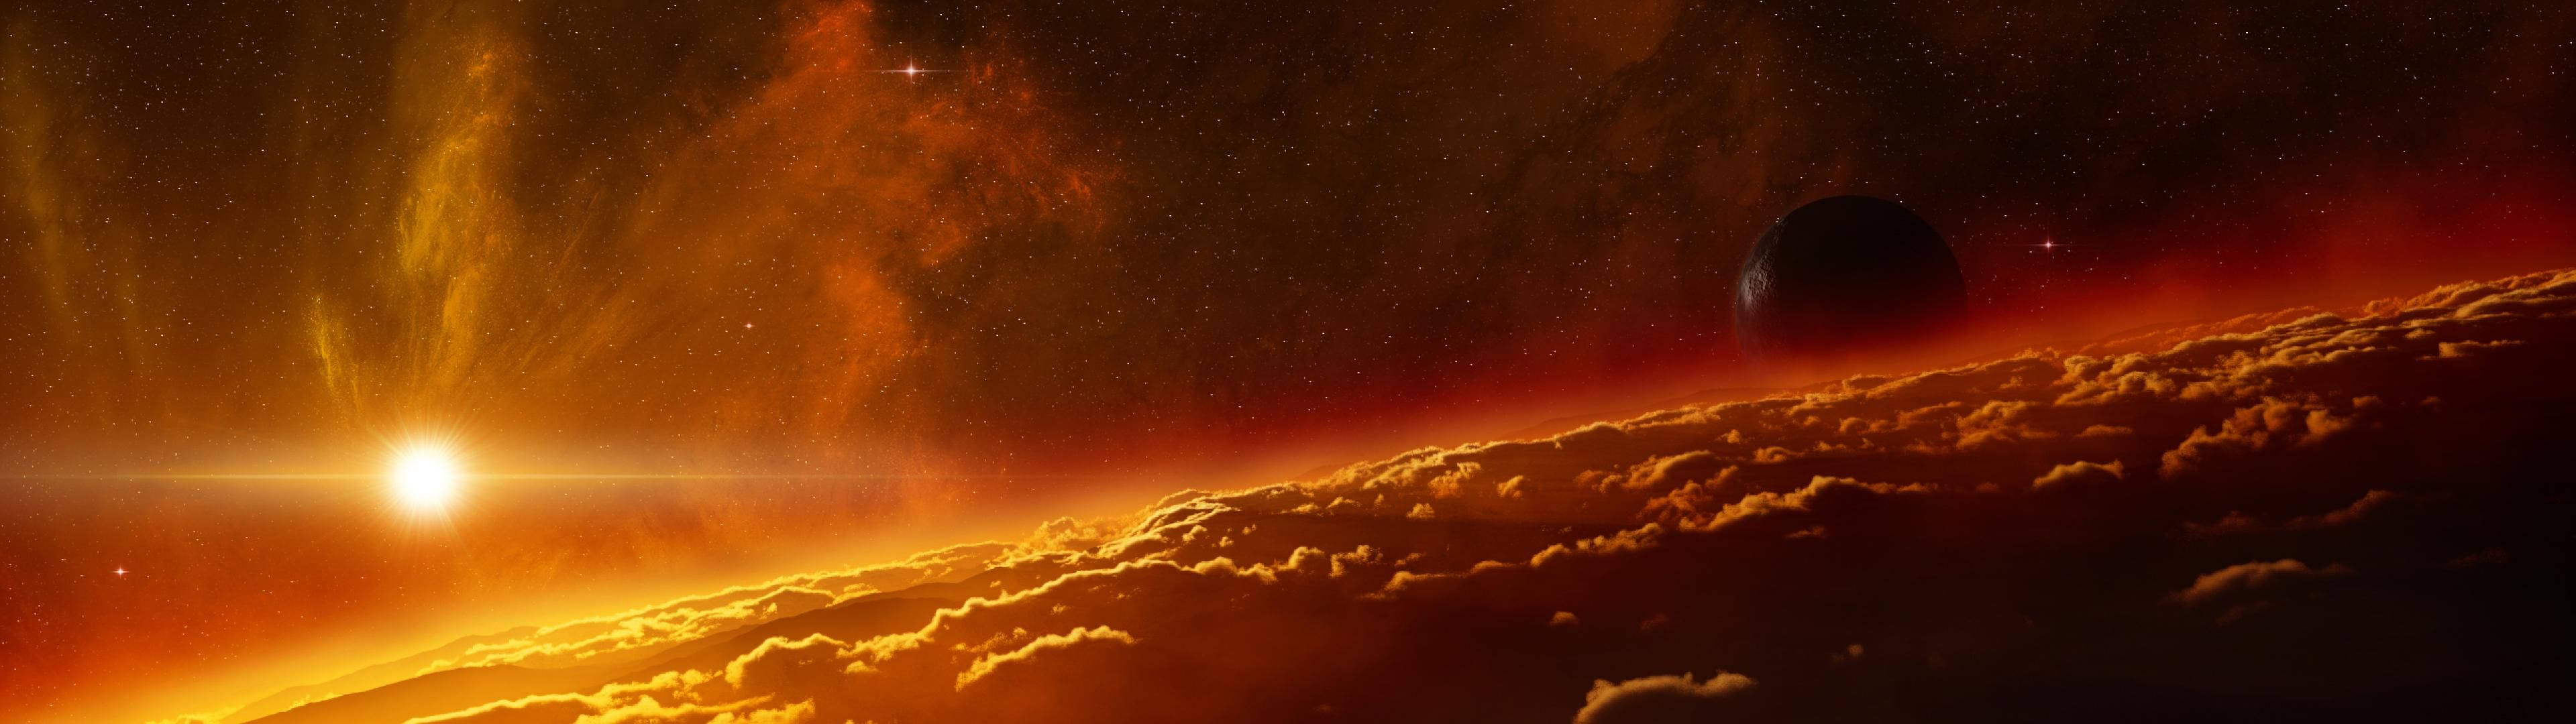 Breitbildbrennende Sonne Im Weltraum Wallpaper